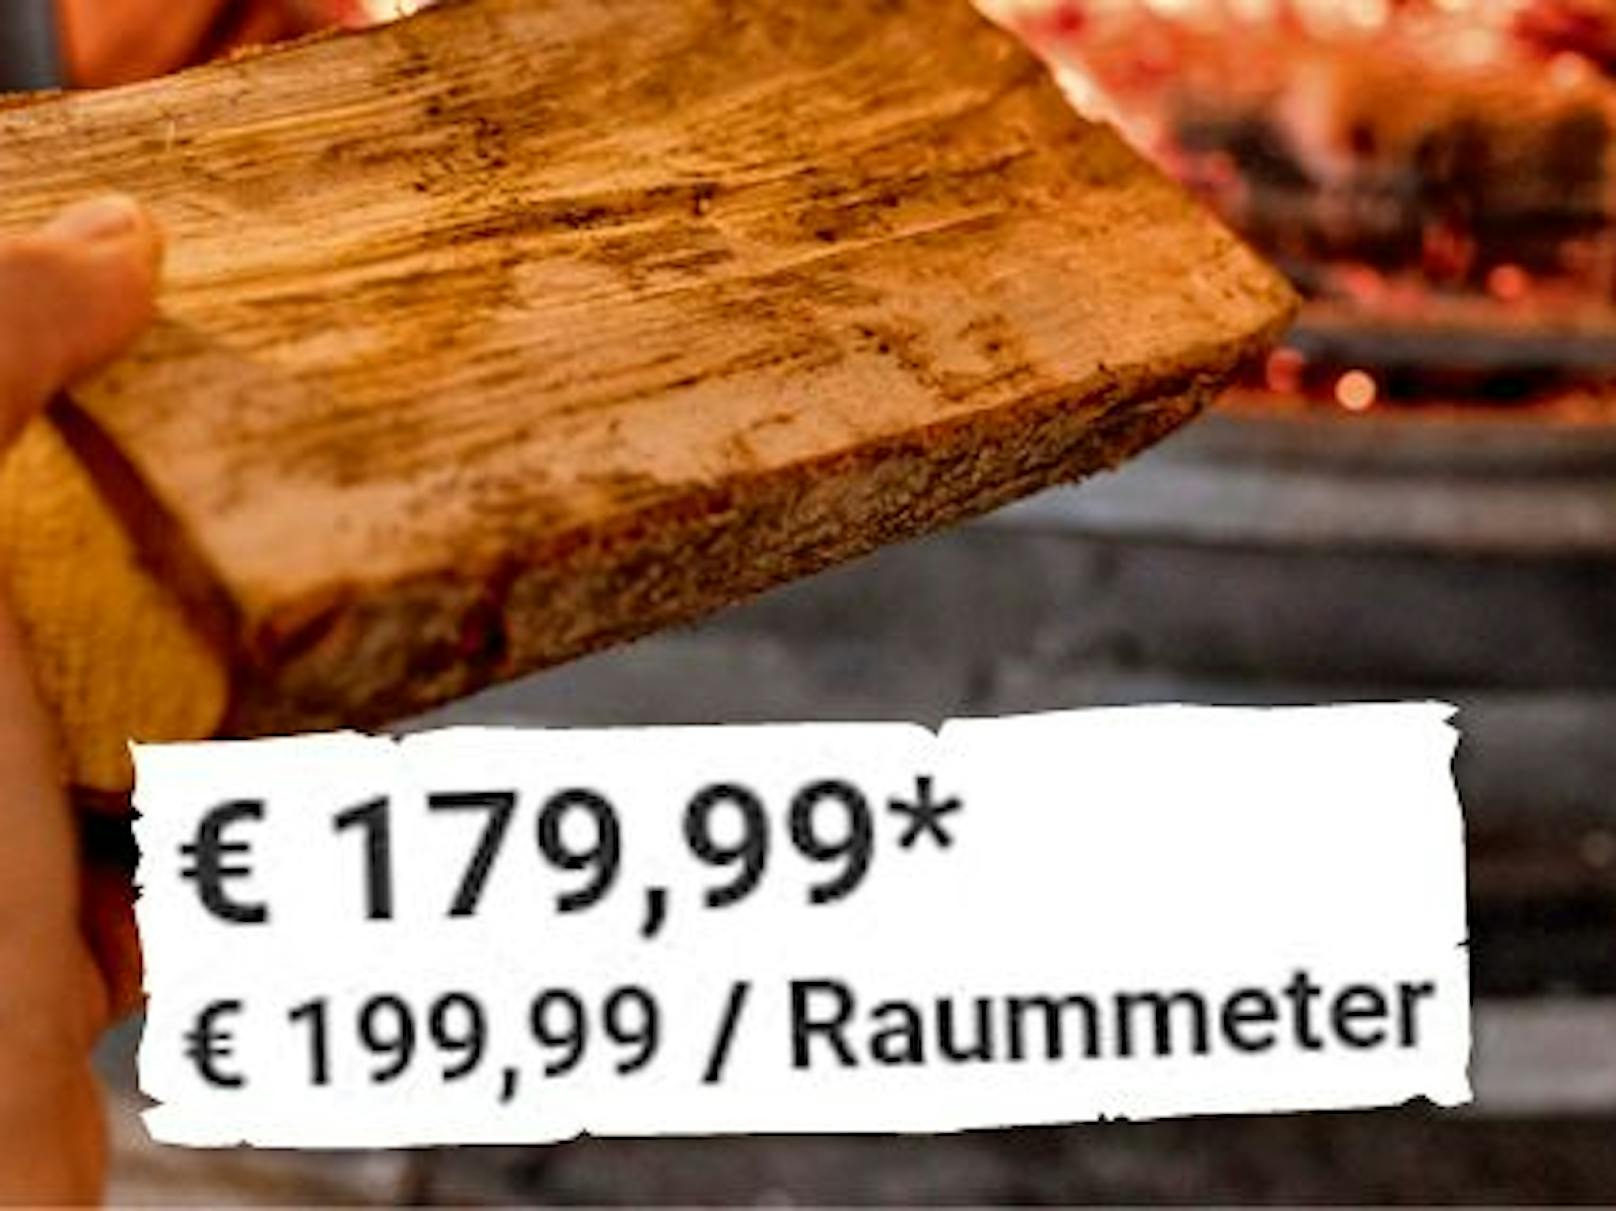 Der Raummeter Brennholz kostet in einem Baumarkt bereits knapp 200 Euro.